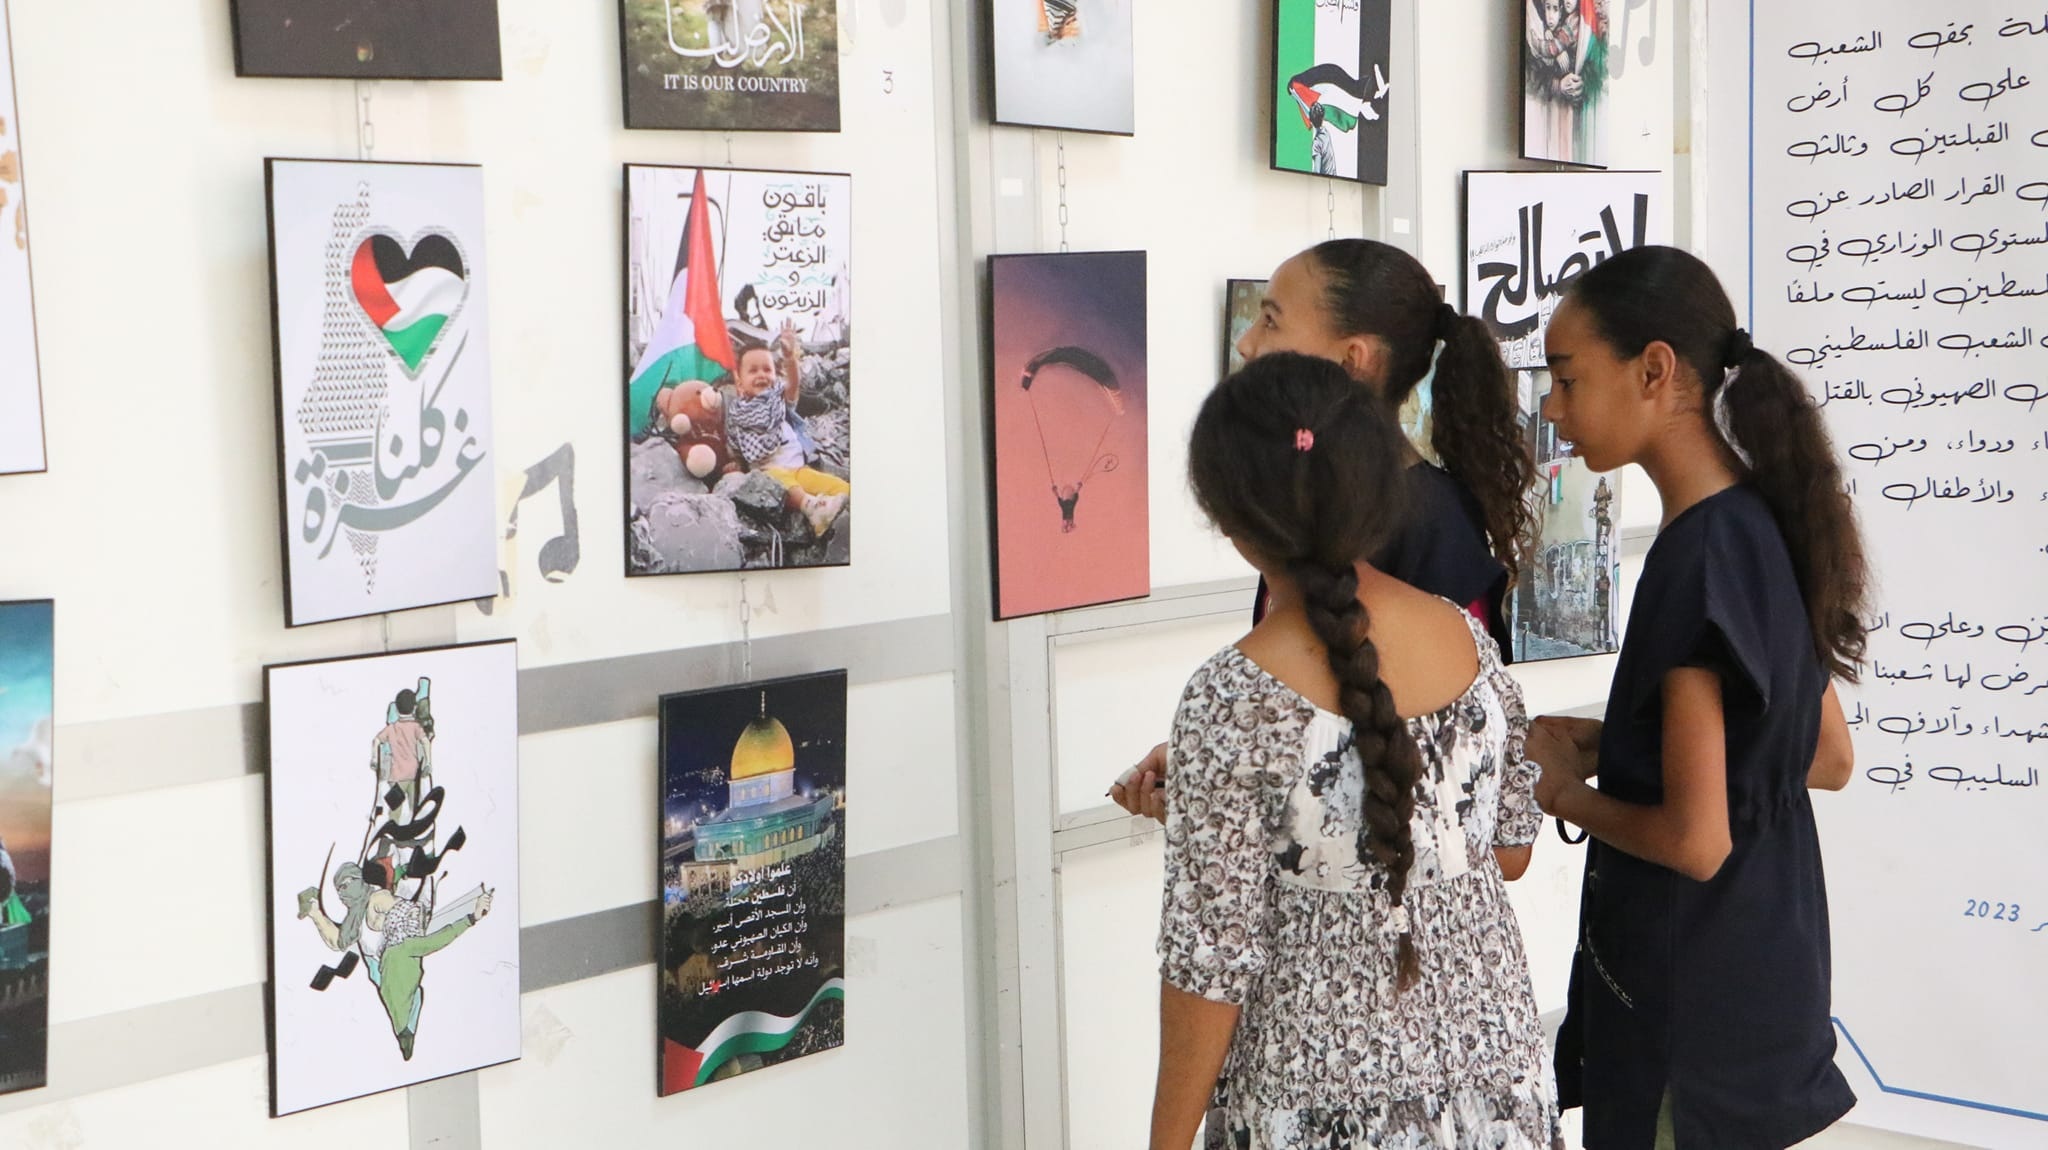 معرض فوتوغرافي وكاريكاتير في مدينة بن عروس التونسية (العربي الجديد)